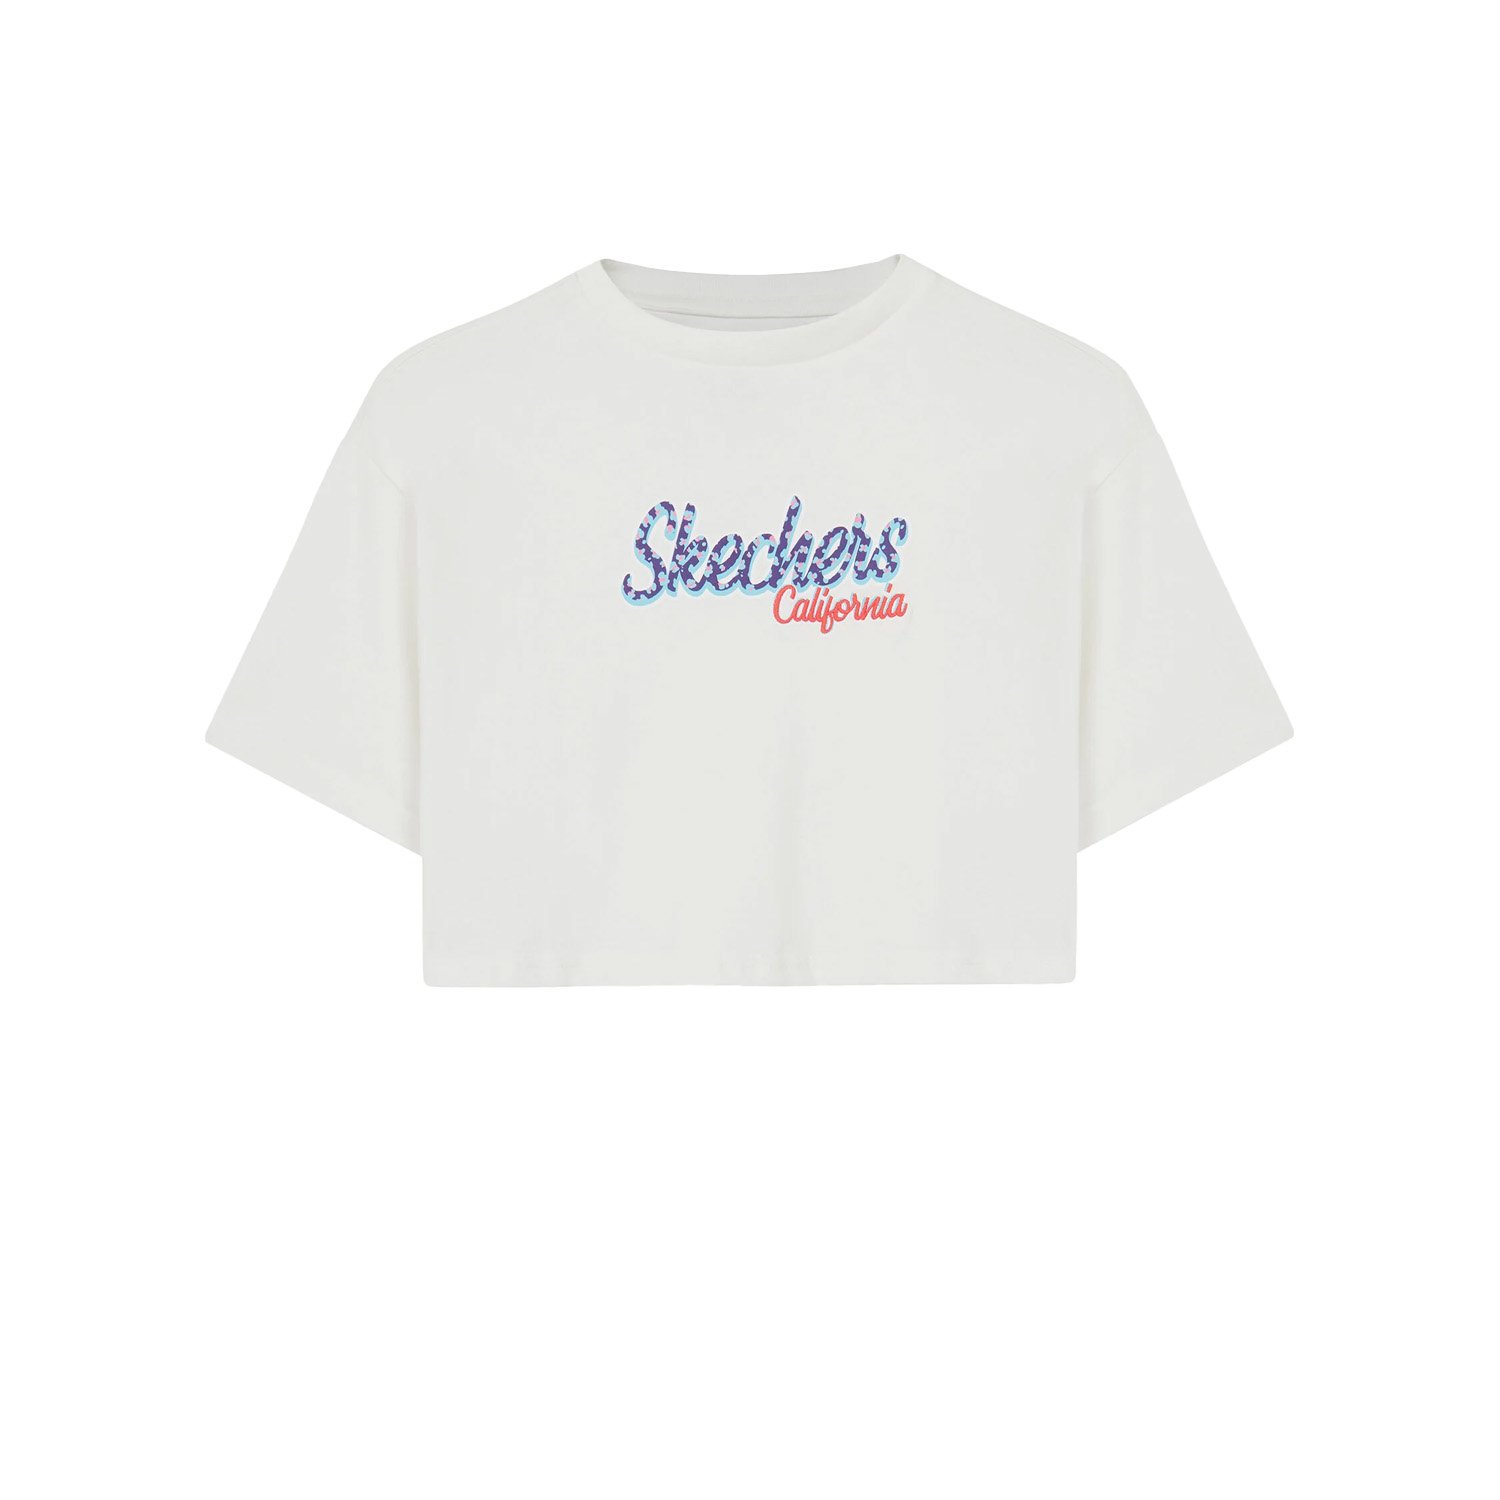 Skechers Graphic Çocuk Tişört - Beyaz - 1